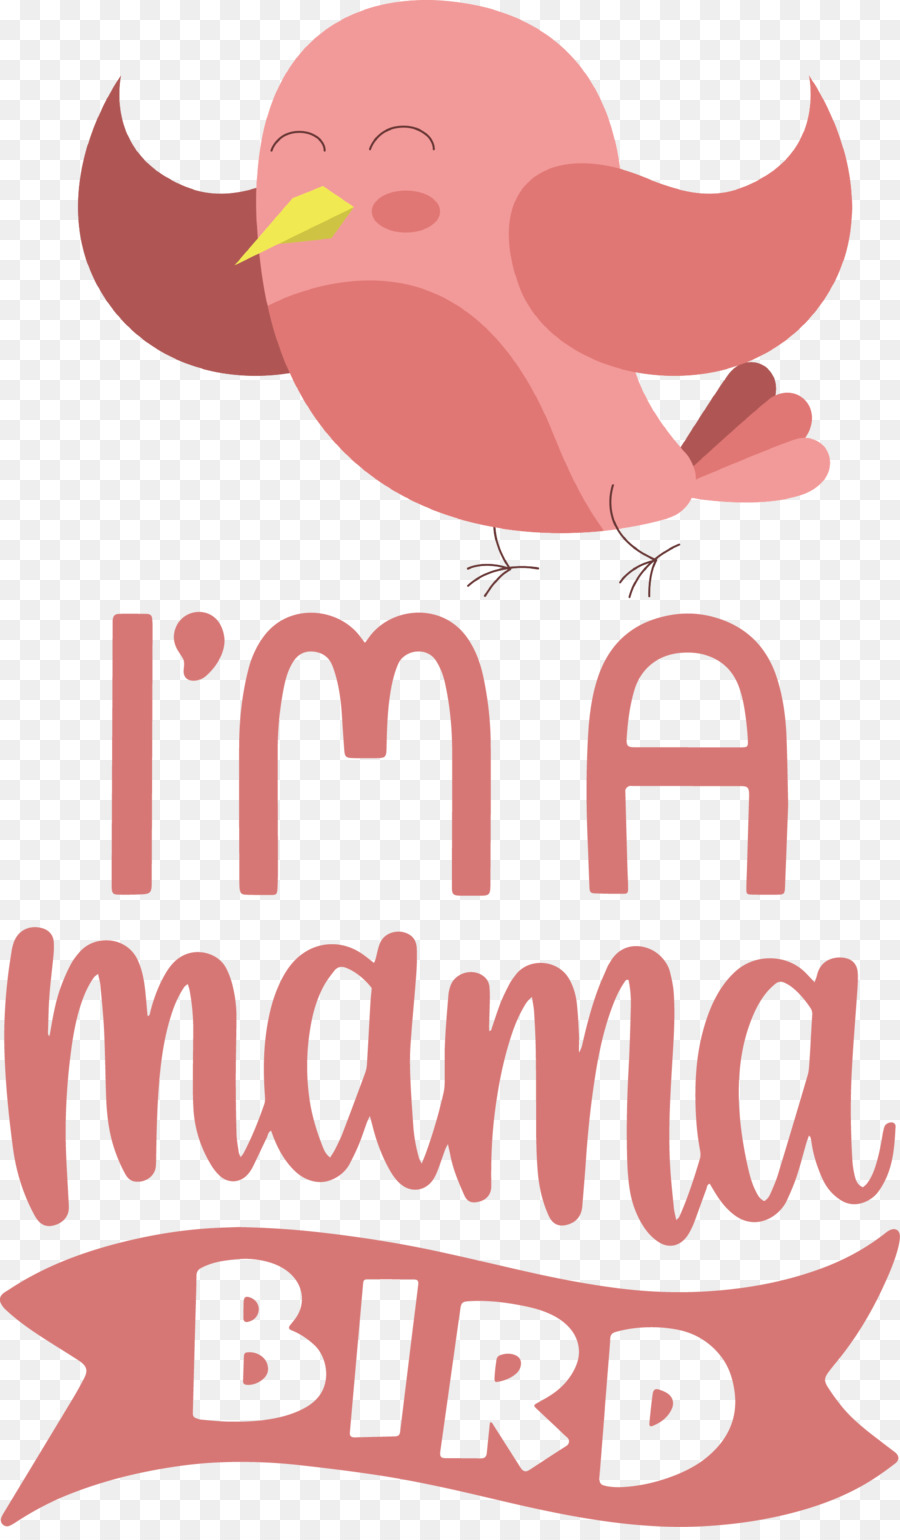 Citazione di Mama Bird Bird - 